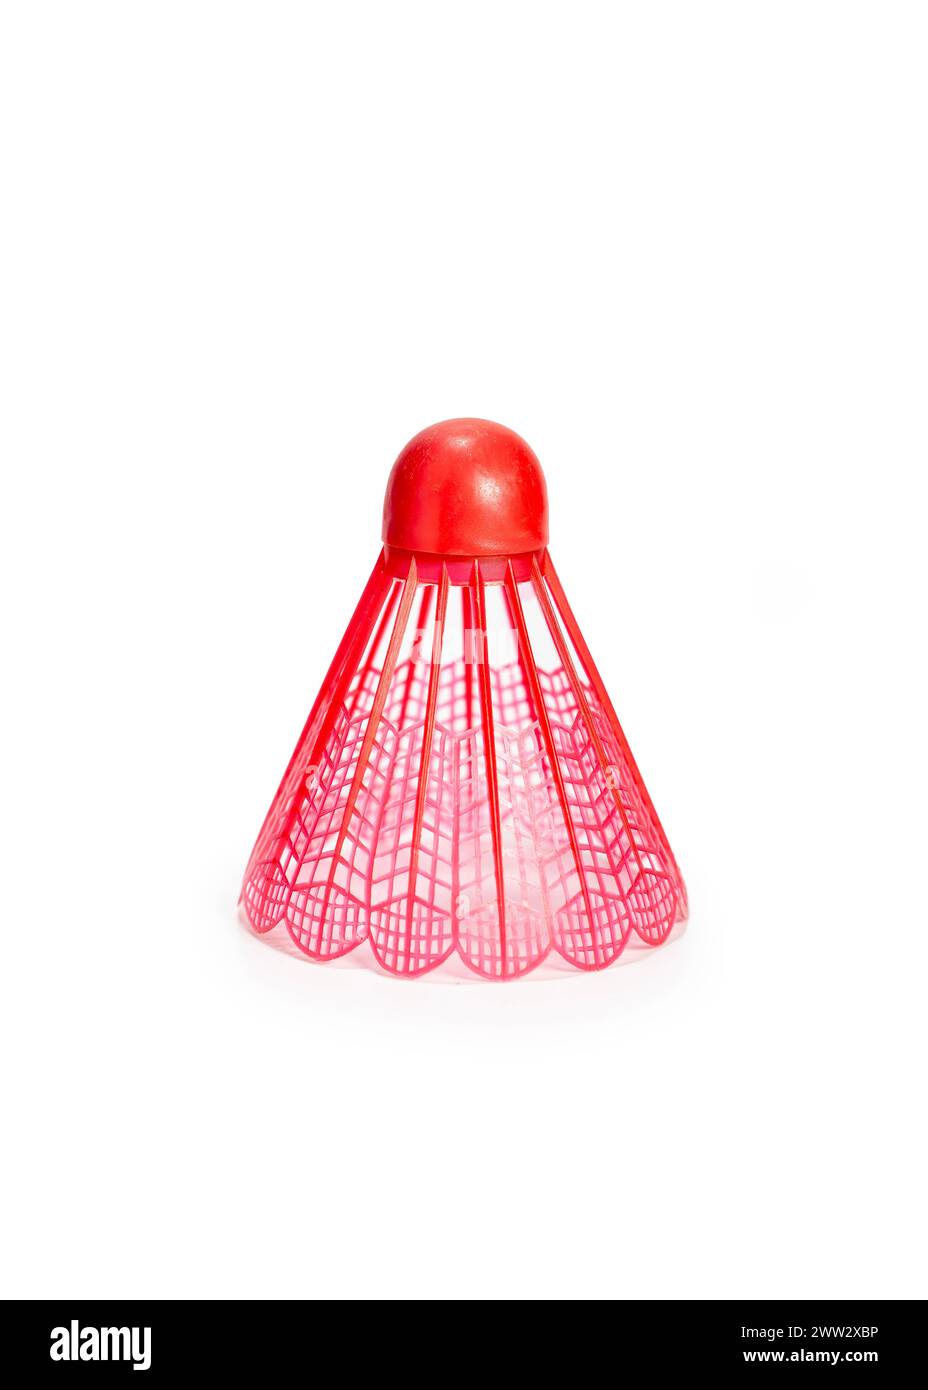 Balle de Badminton en plastique rouge (Shuttlecock), isolée sur fond blanc Banque D'Images